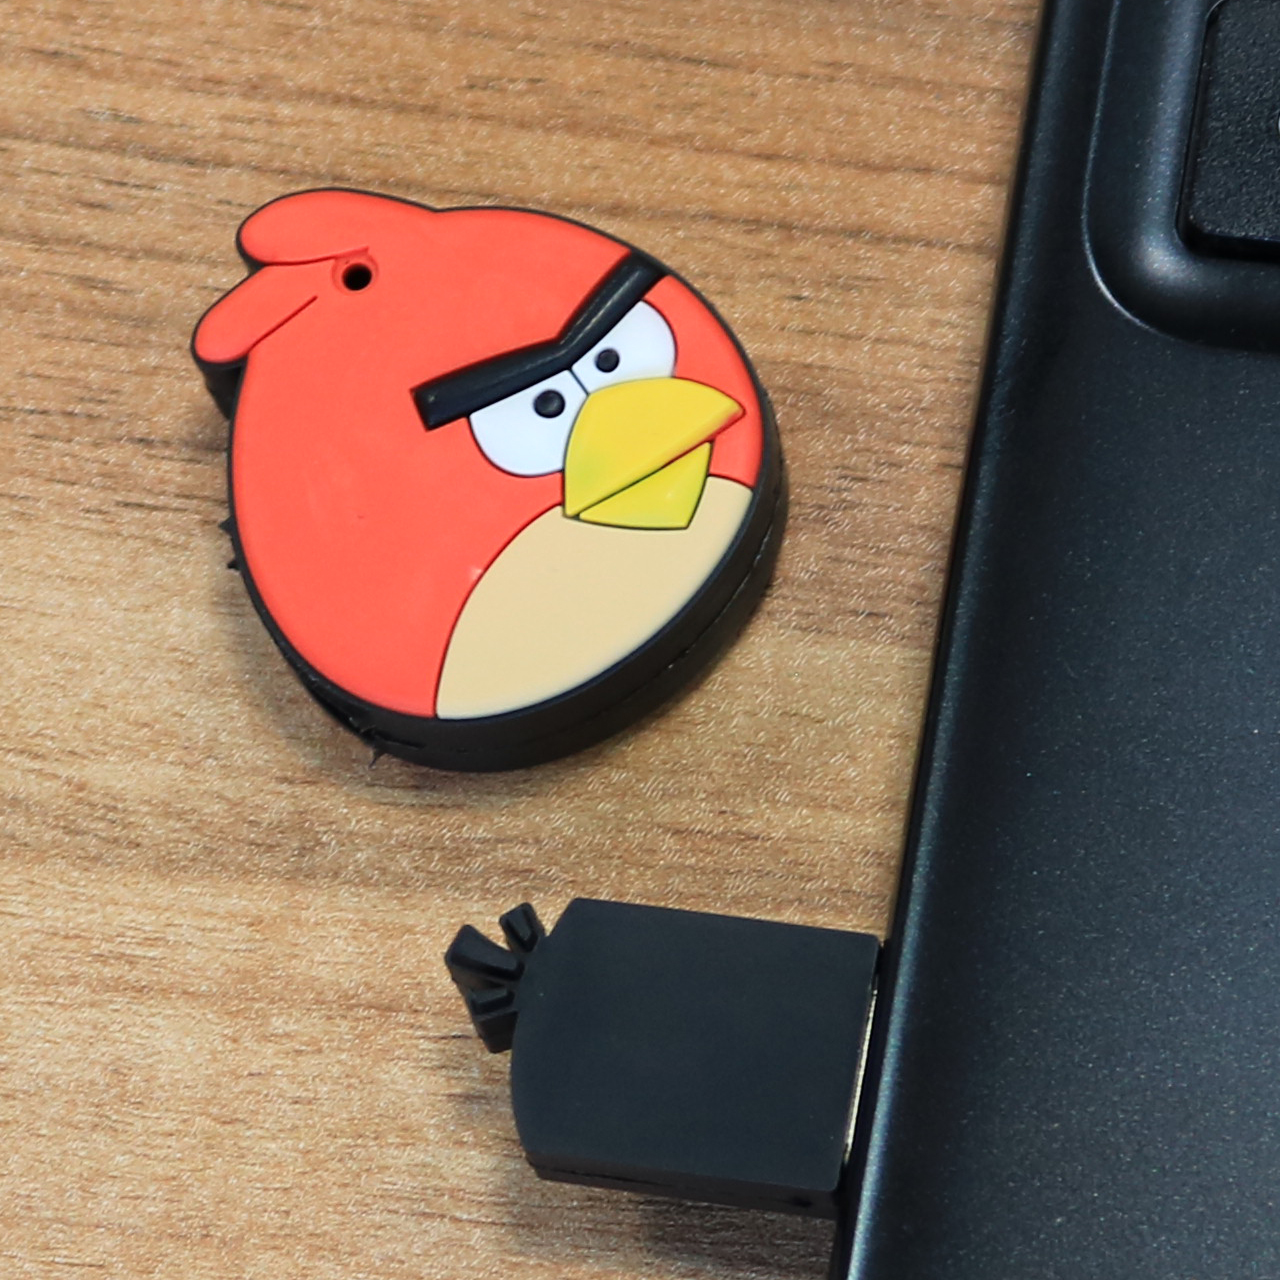 فلش مموری مدل Ul-Angry Birds01 ظرفیت 8 گیگابایت